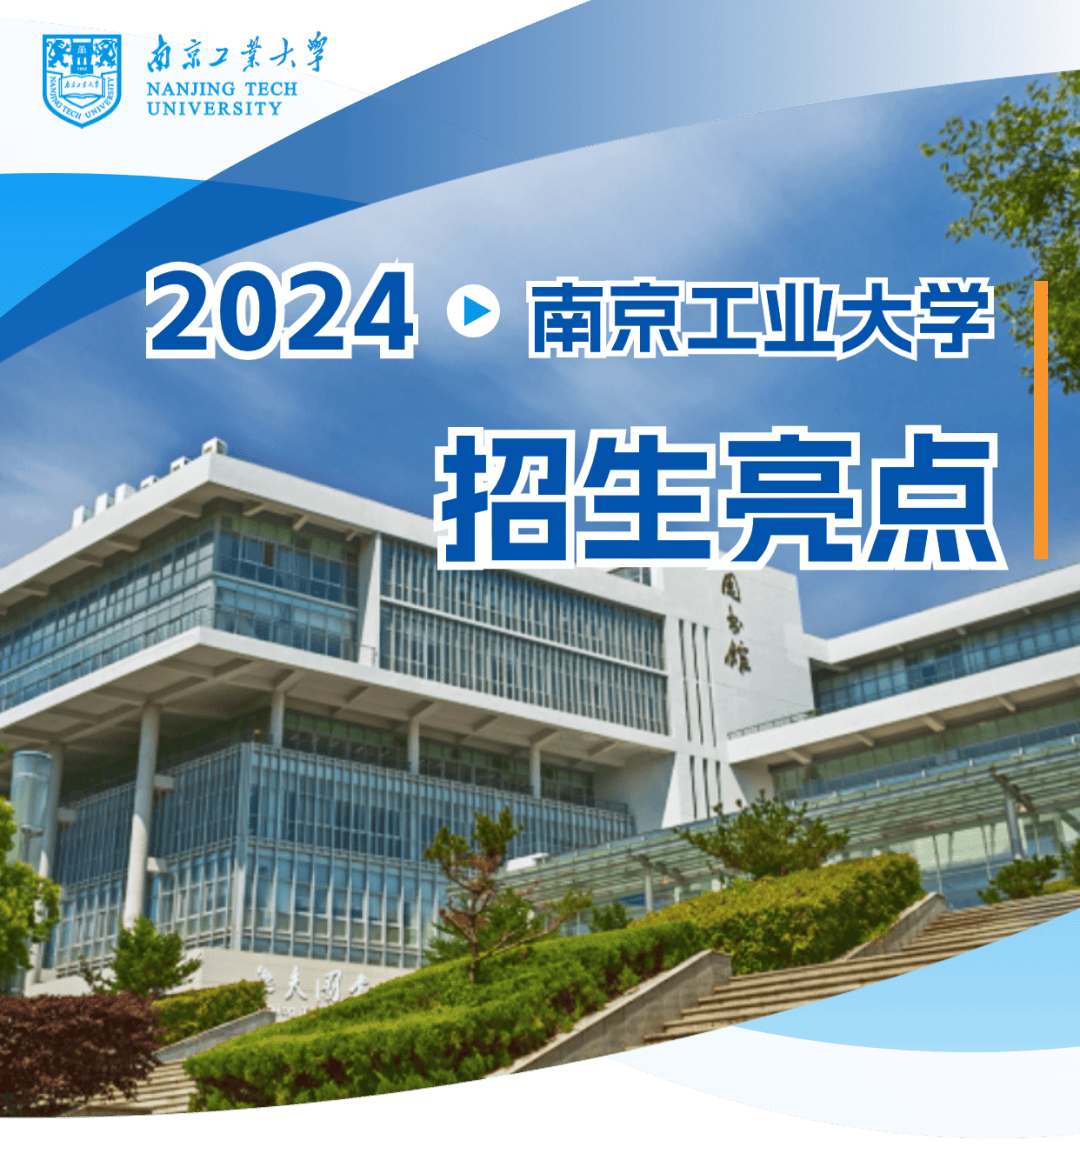 南京工业大学2024年本科招生亮点出炉!